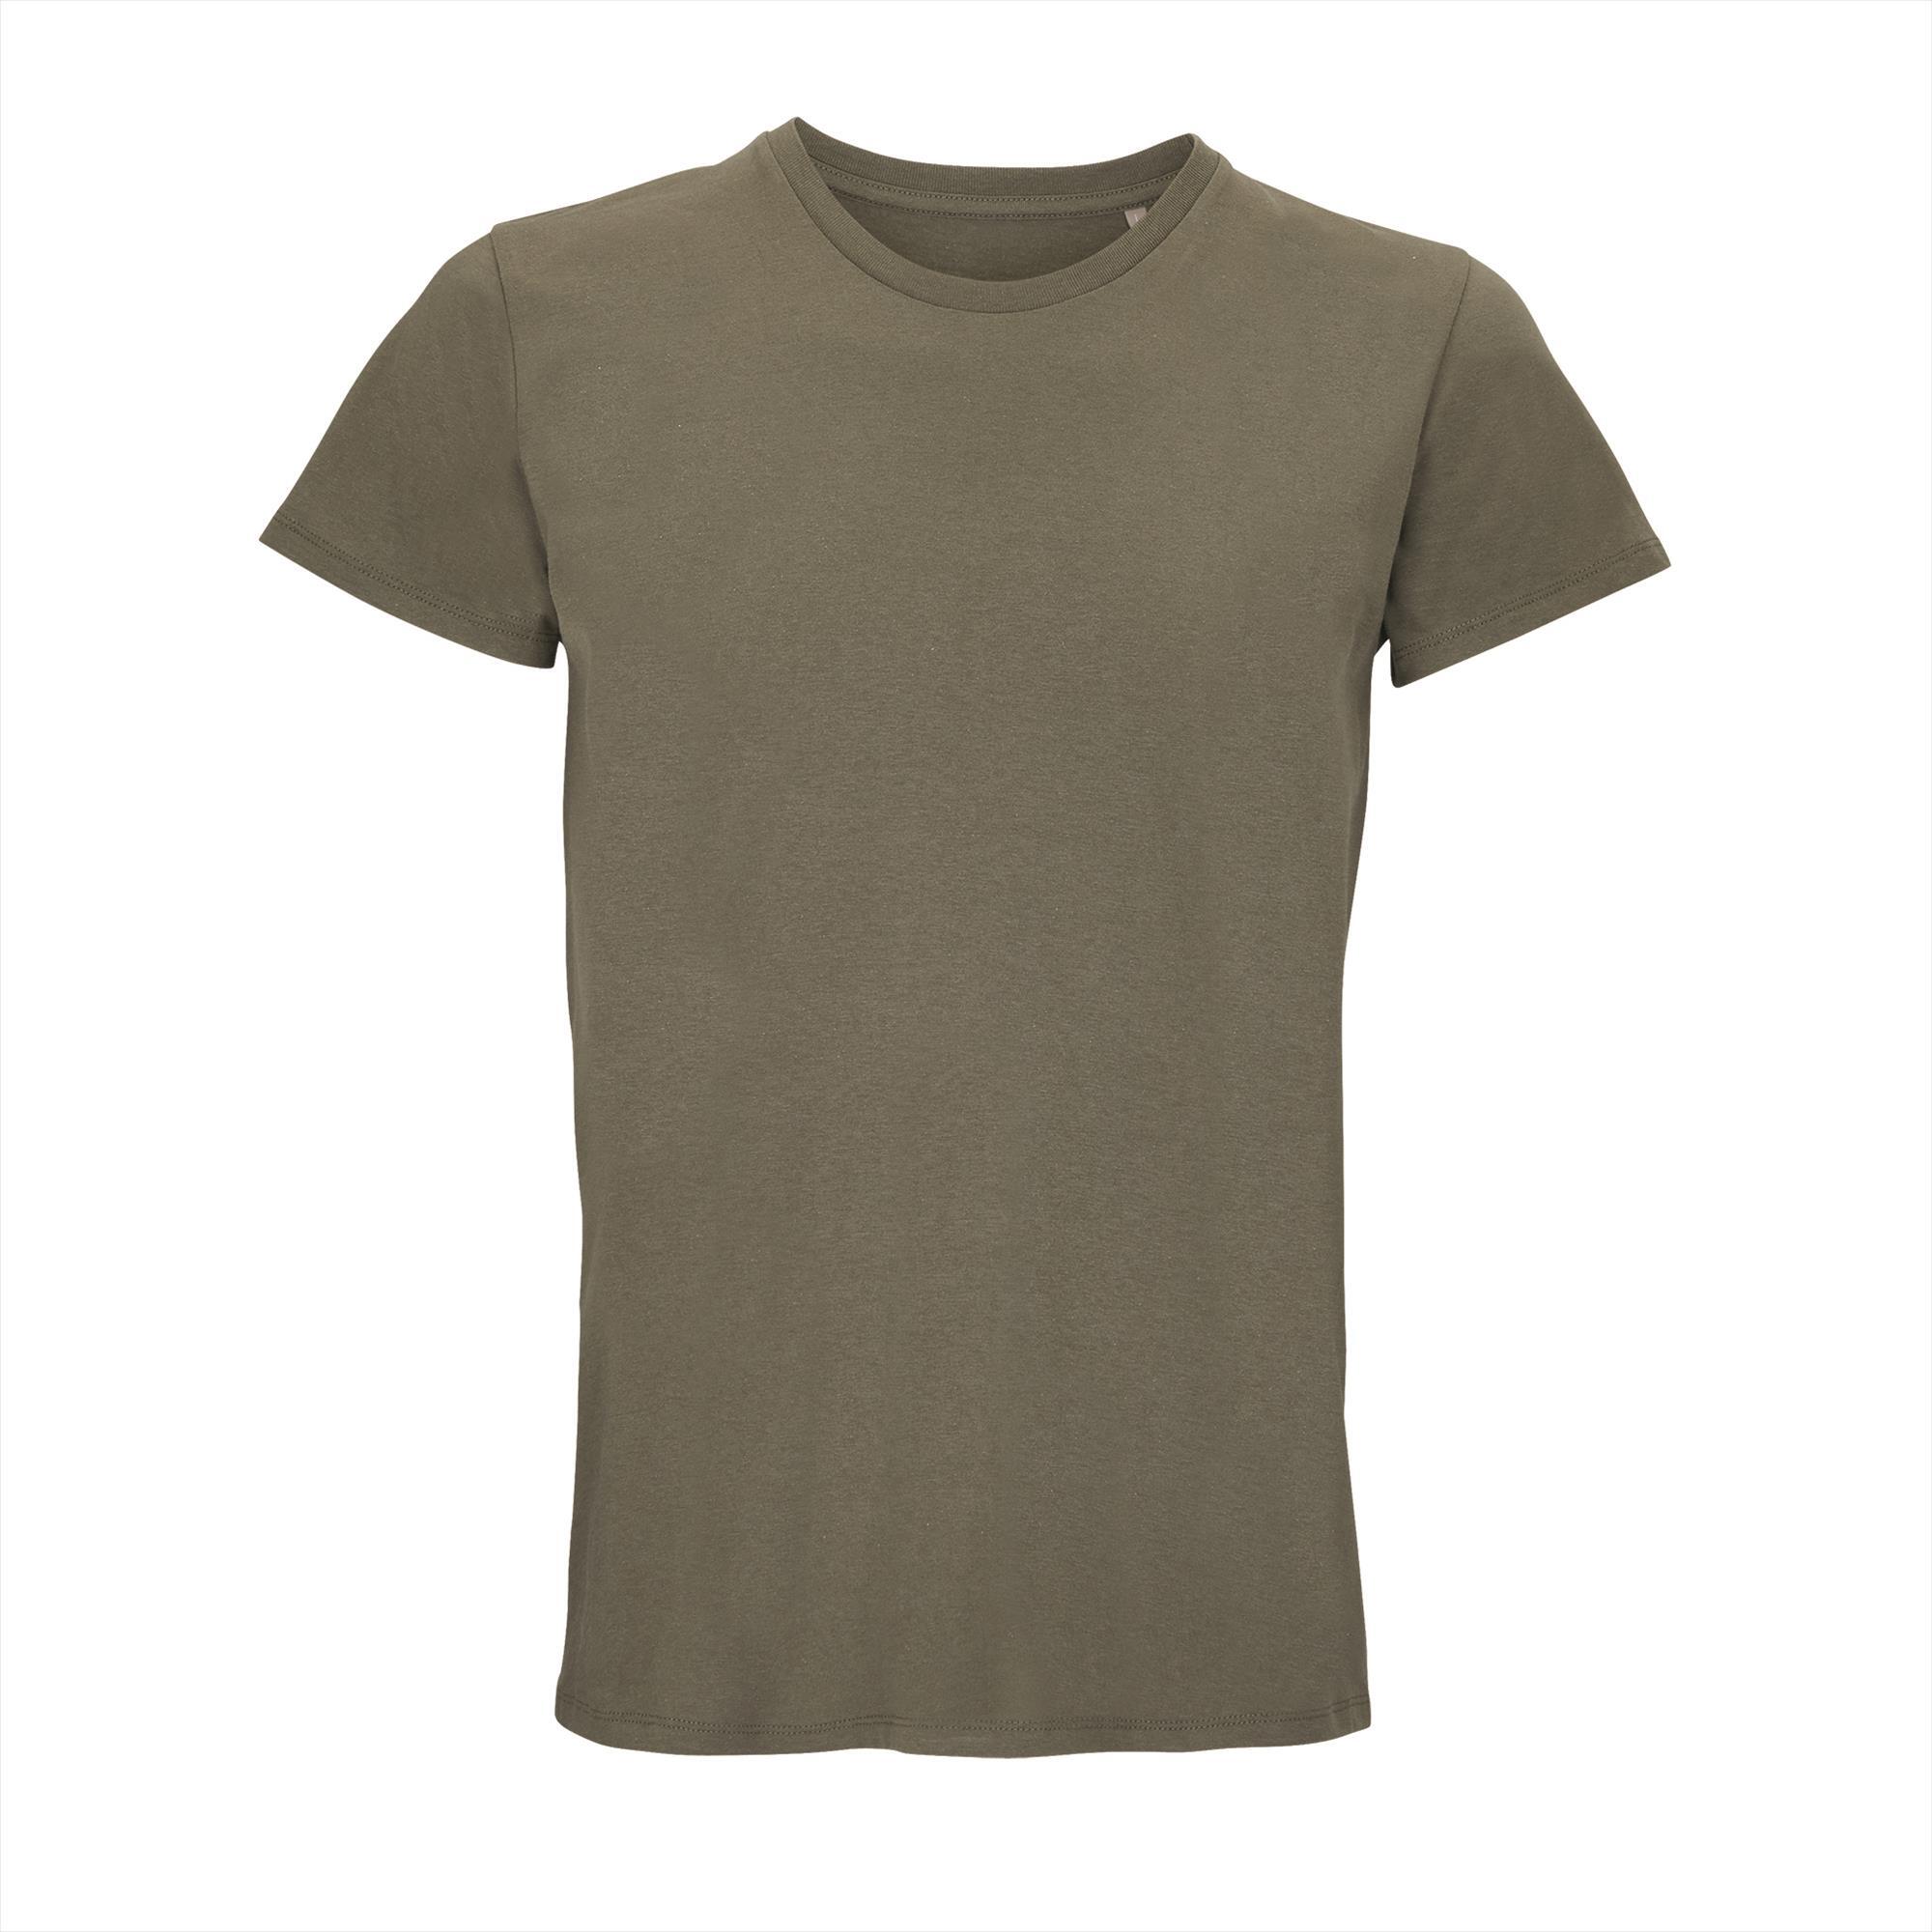 Unisex T-shirt heren leger groen bedrukbaar